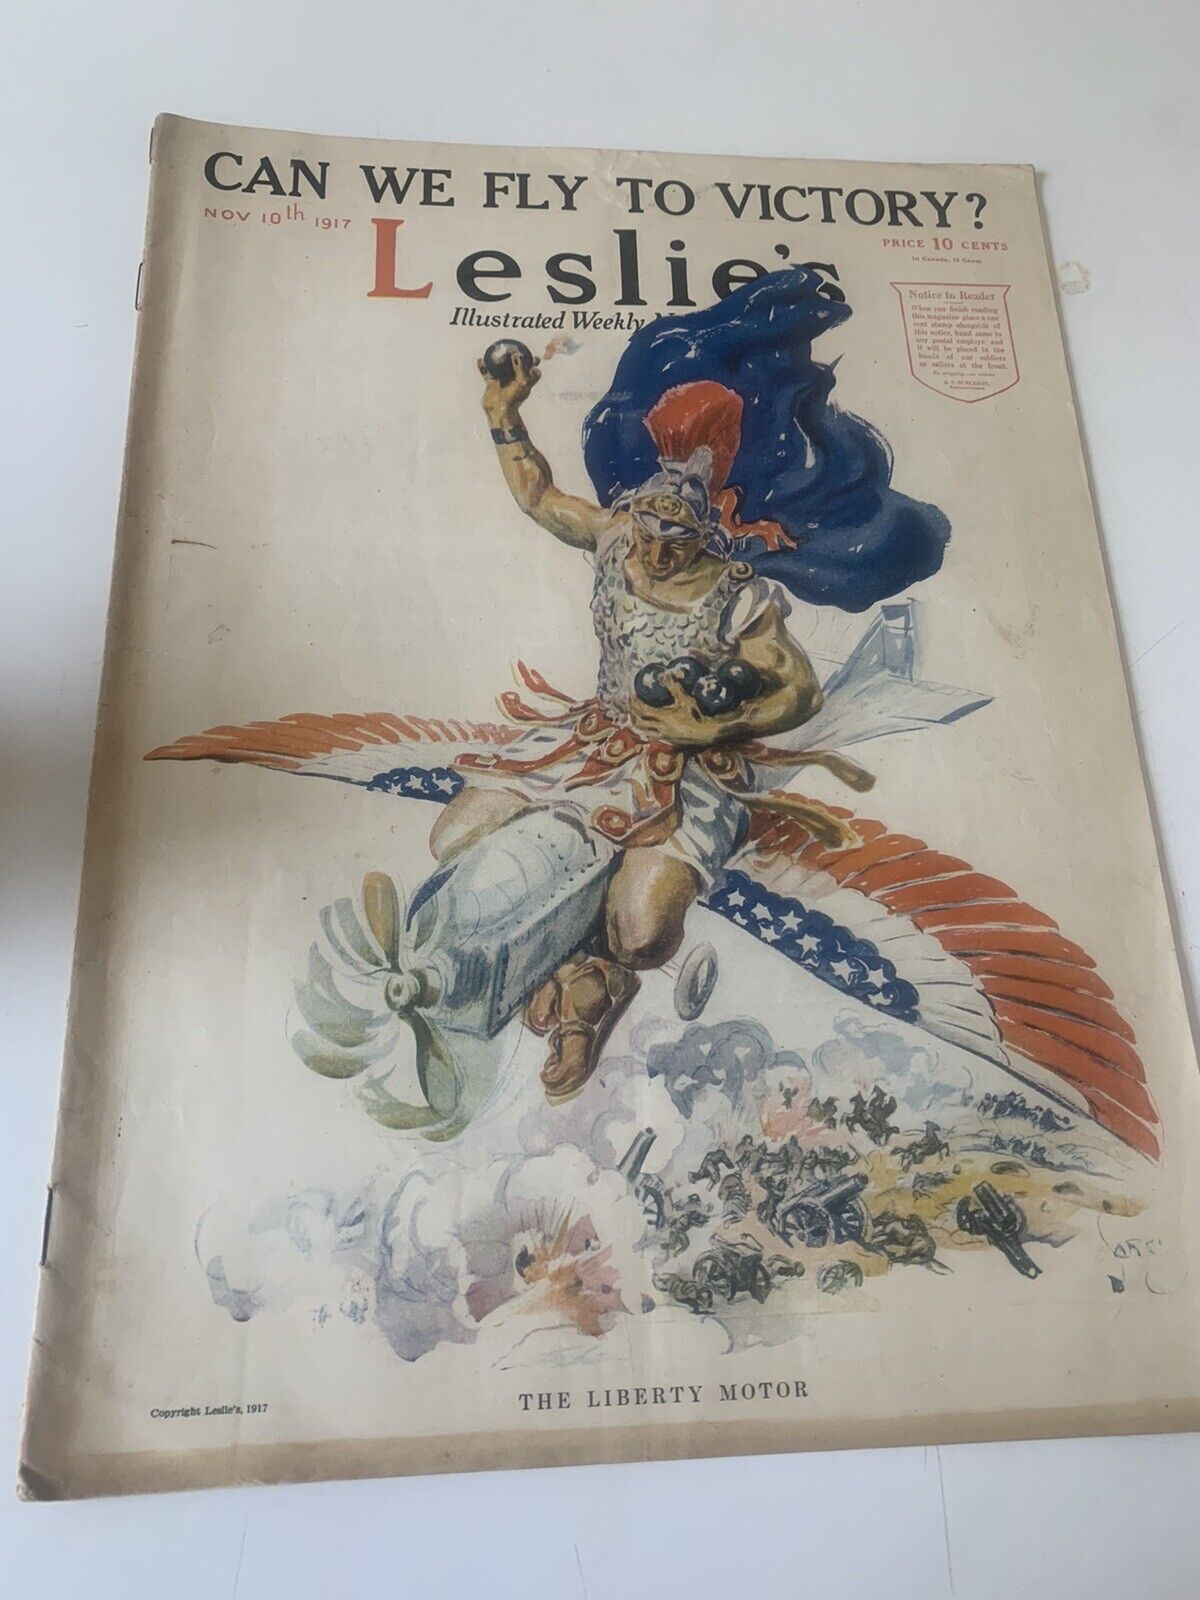 LESLIE'S ILLUSTRATED WEEKLY NEWSPAPER, NOV. 10TH, 1917 